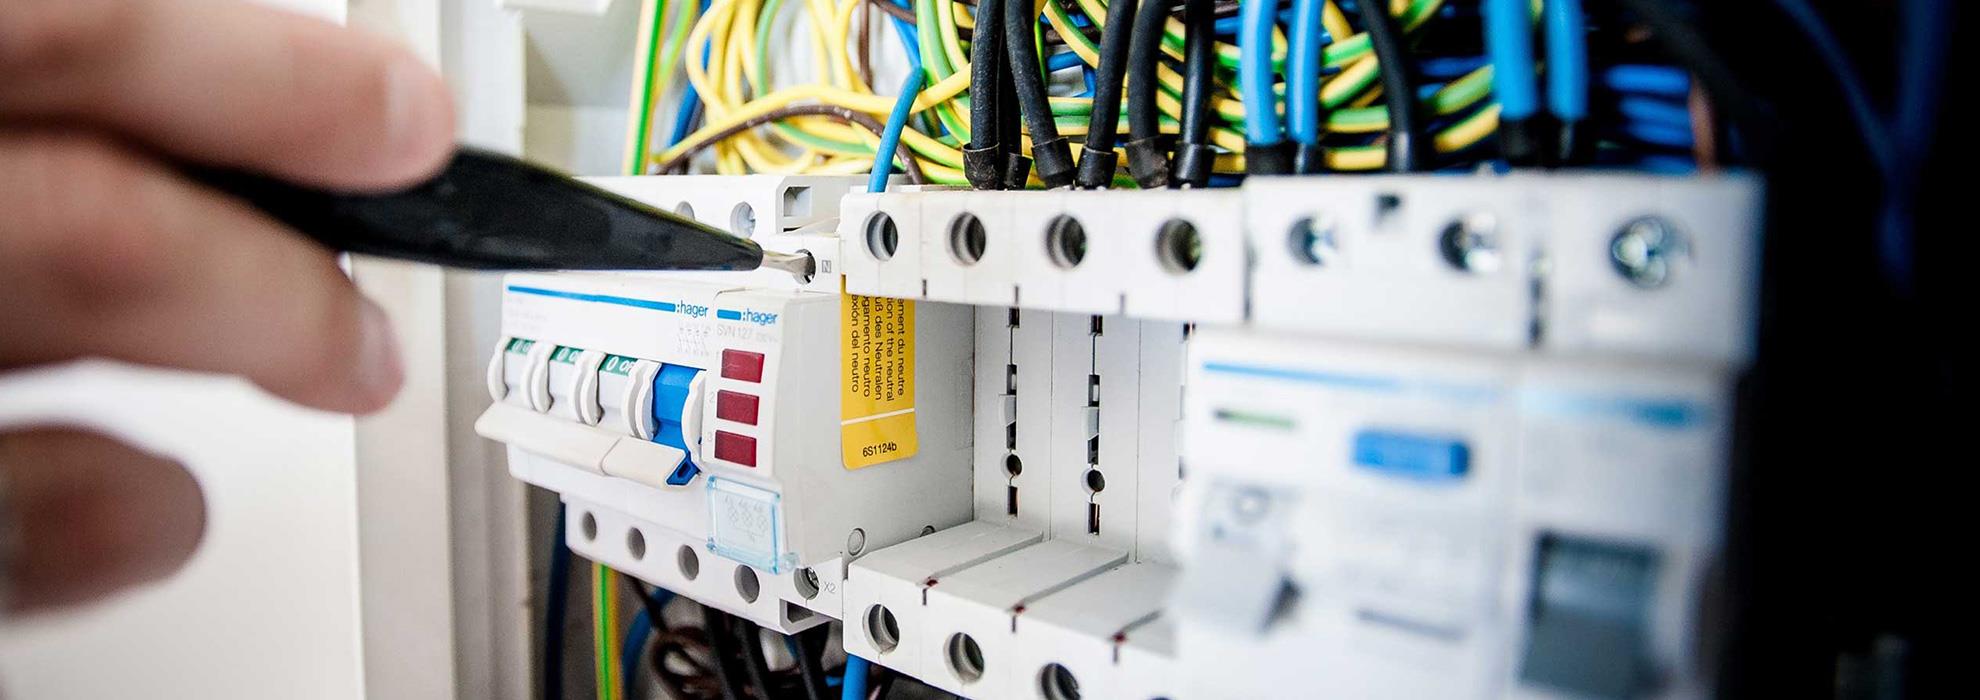 أنت بحاجة إلى كهربائي ذو خبرة يمكنه إصلاح جميع الأعطال الكهربائية بتكلفة رخيصة وبشكل صحيح